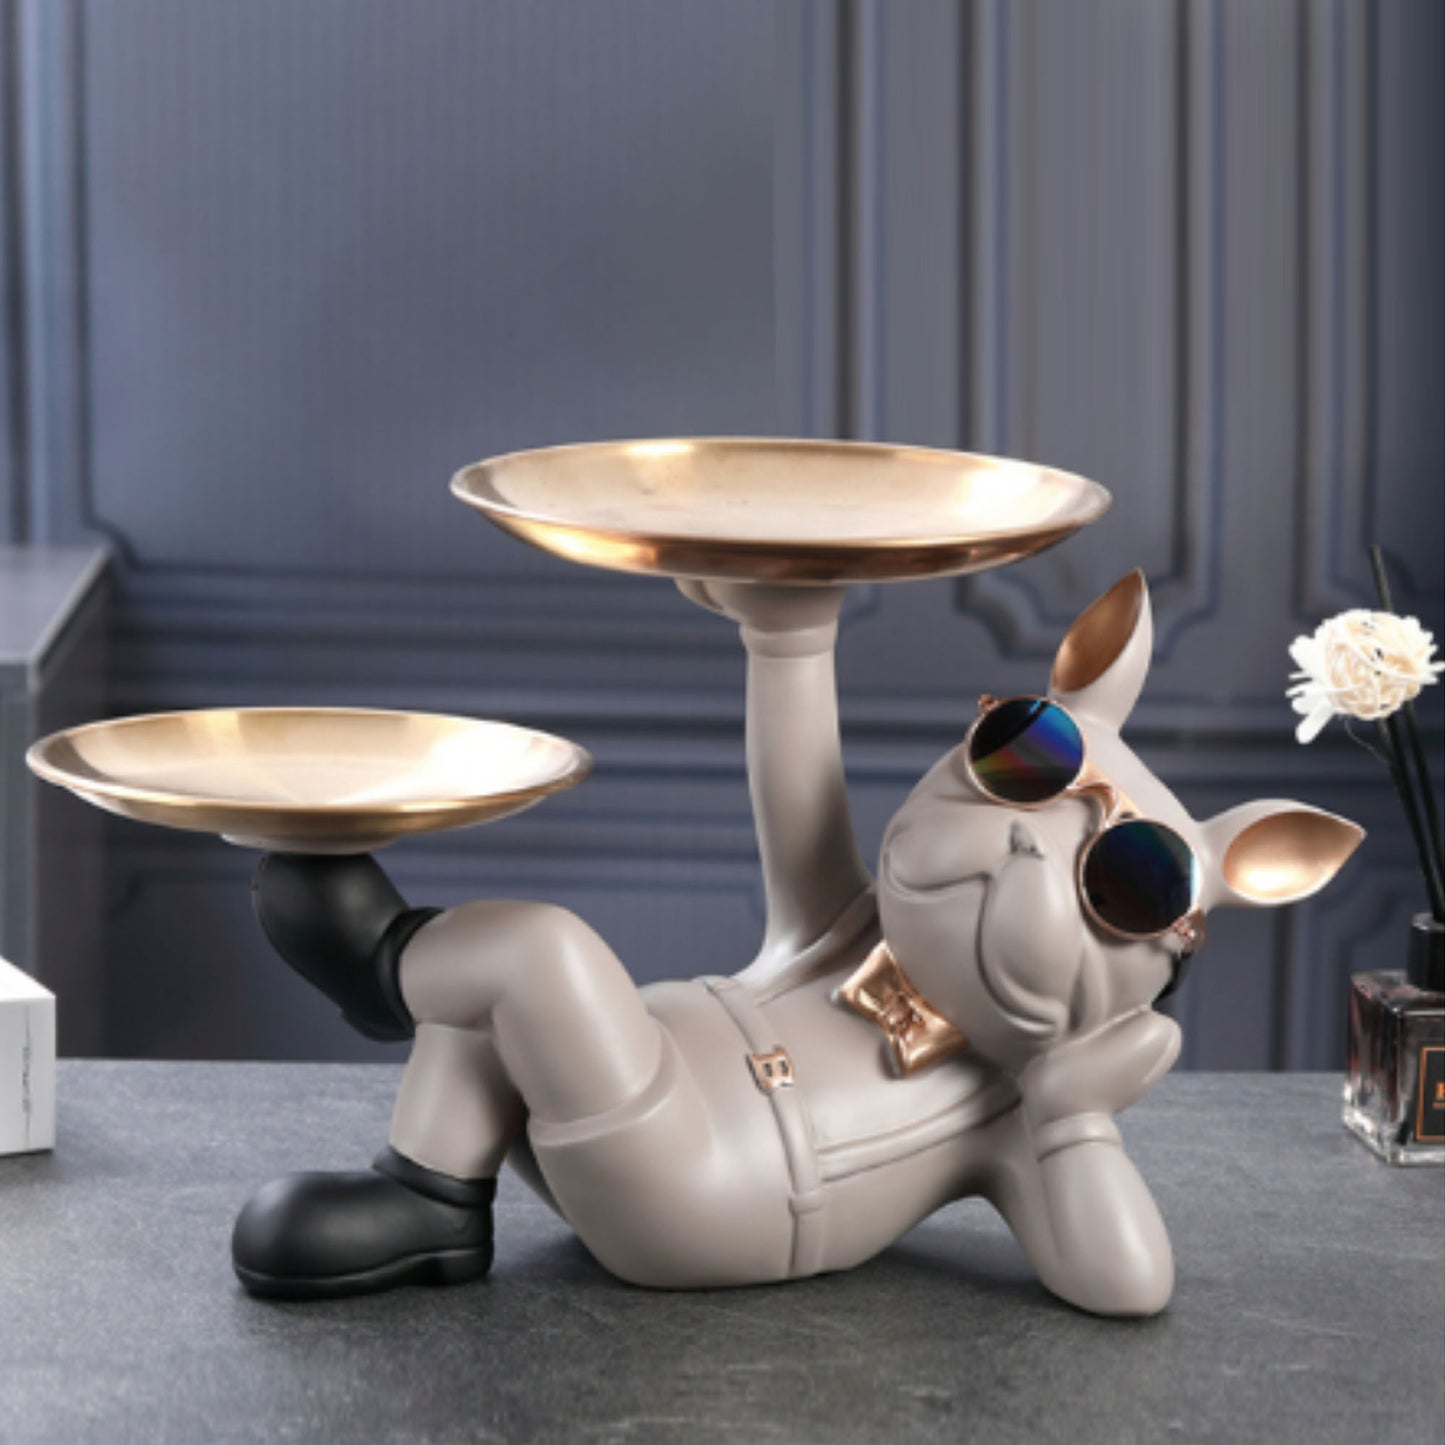 Französische Bulldogge Butler Skulptur - 5 Farben